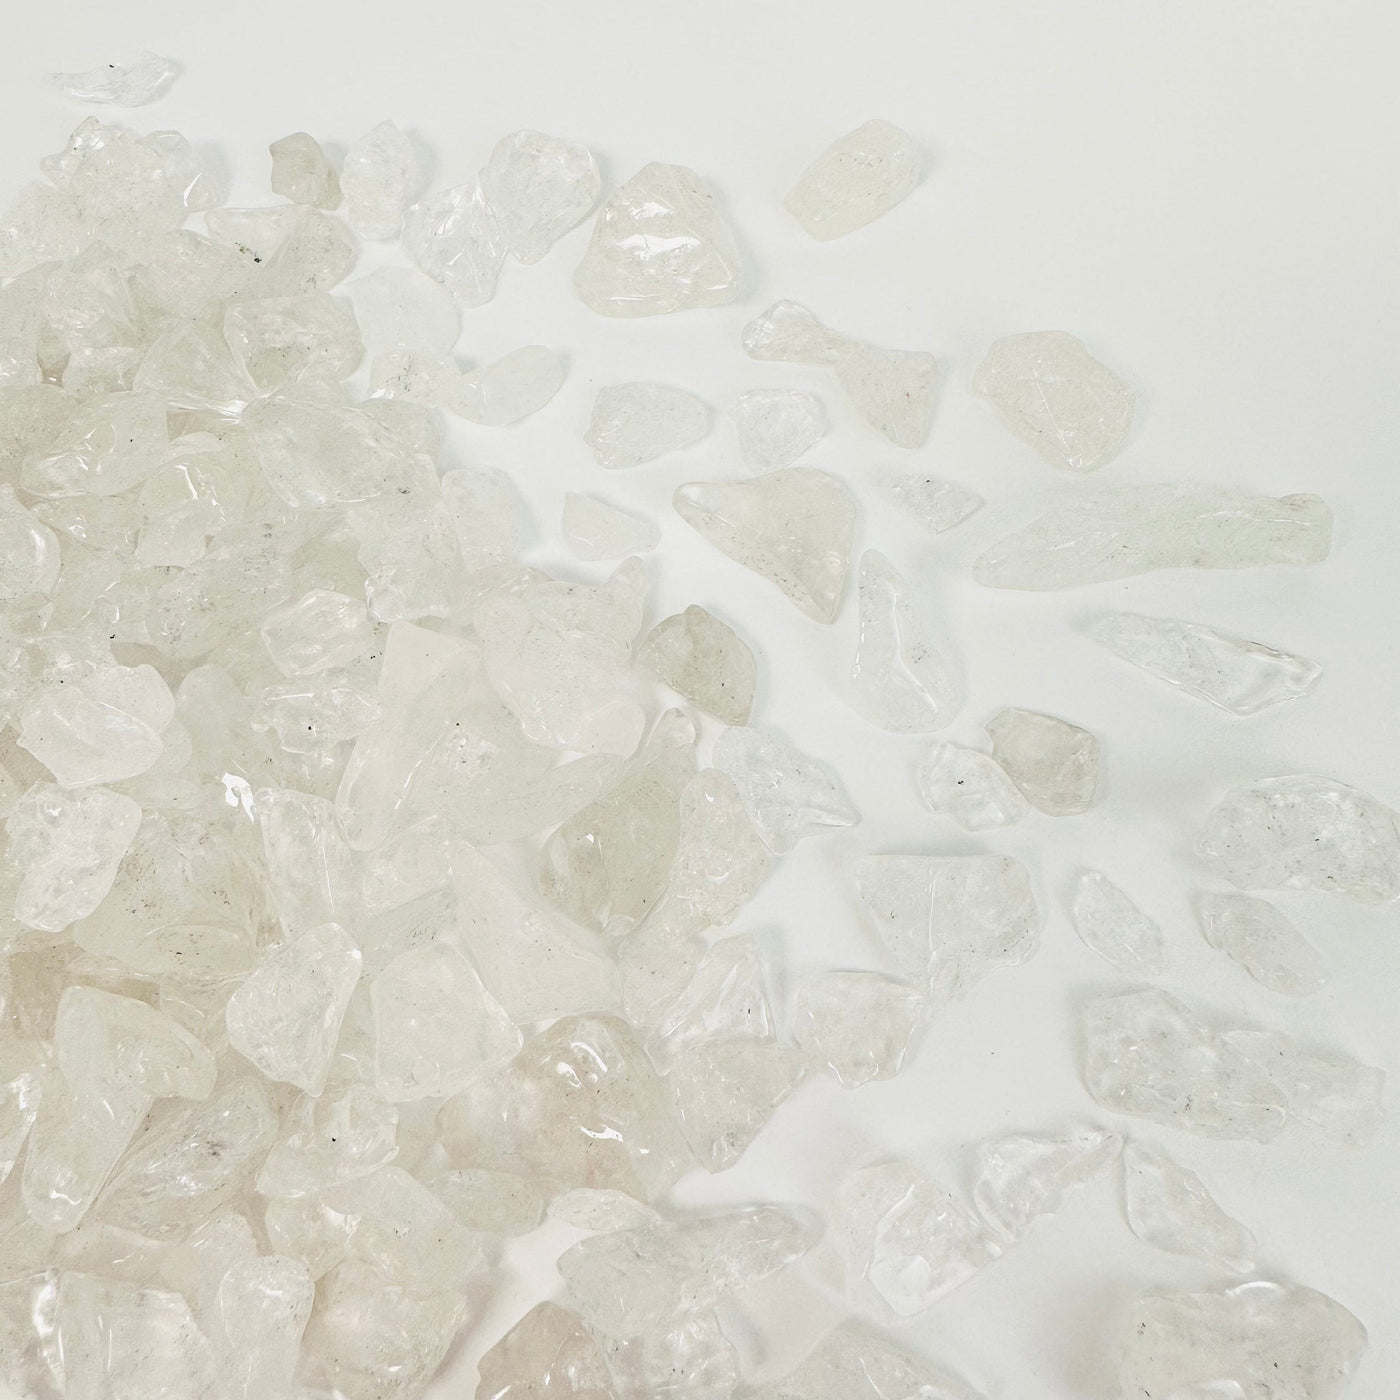 Crystal Quartz 1Lb Polished Freeform Chips - close up of crystal quartz chips